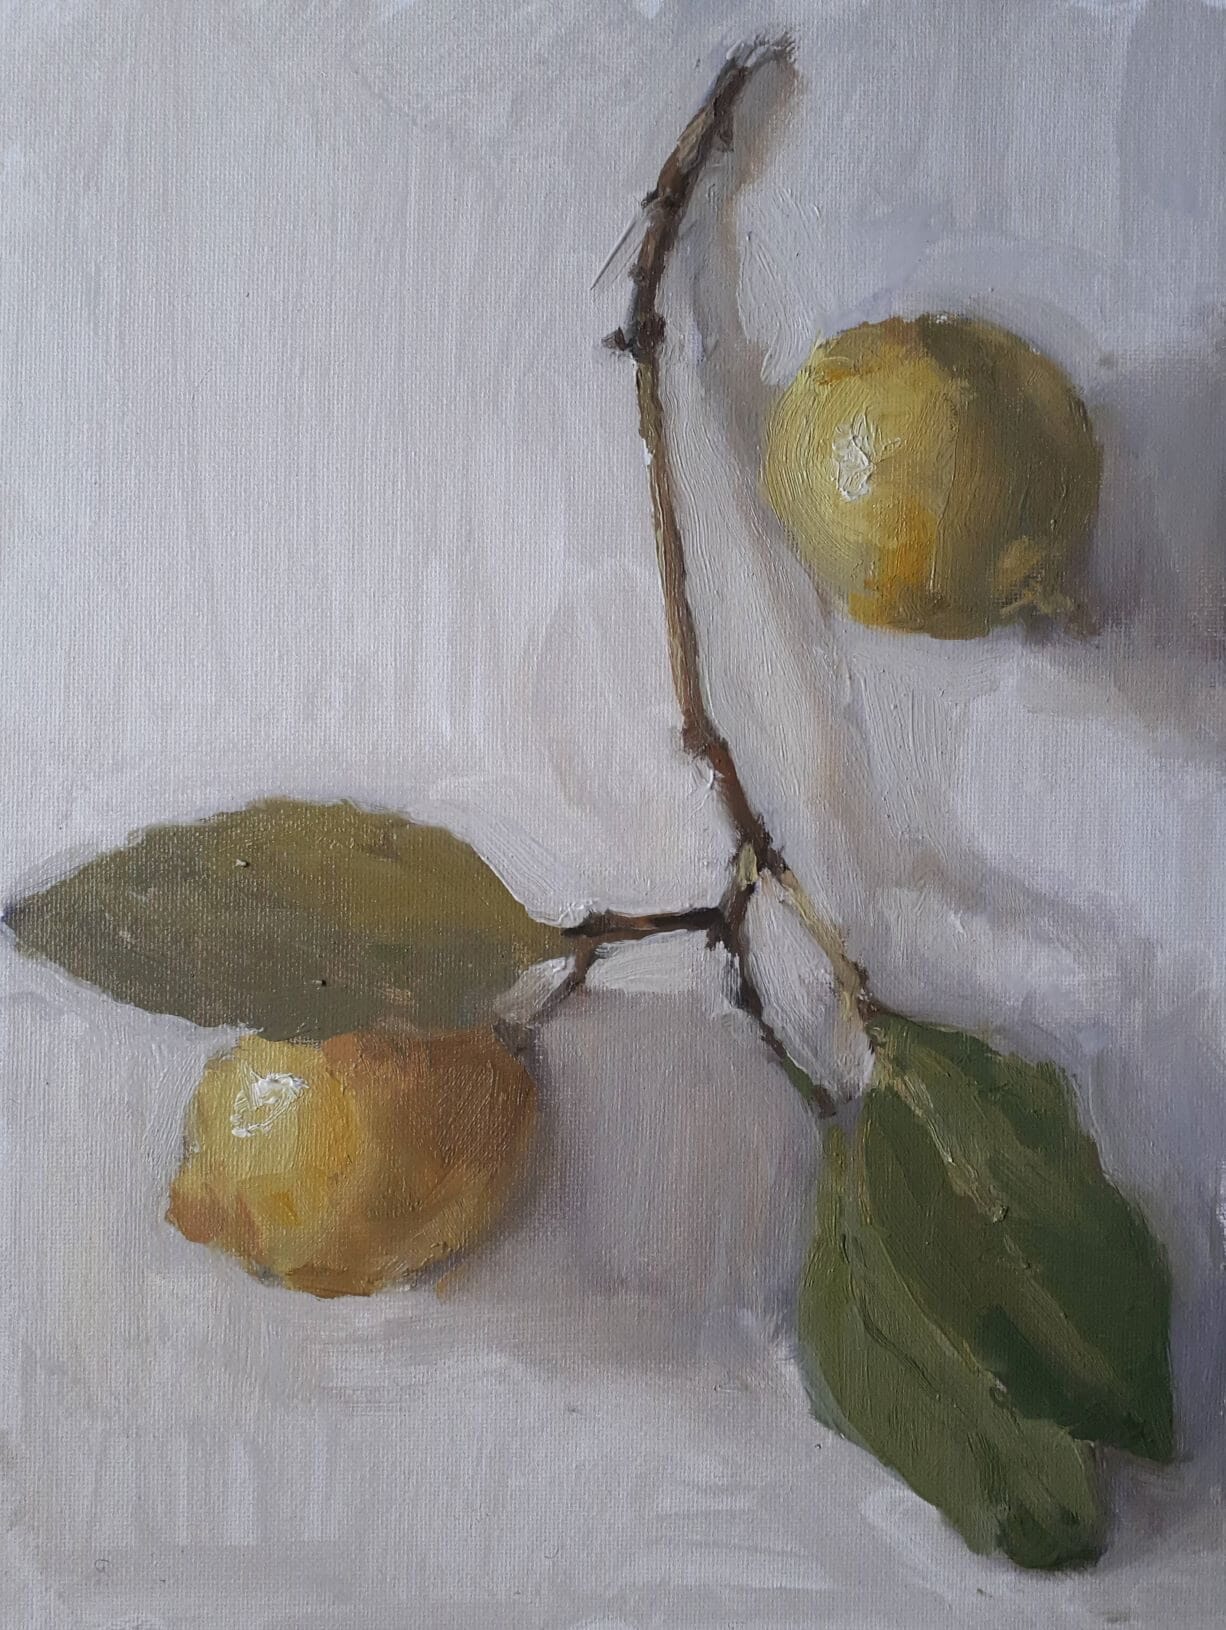  Lemons on the Branch